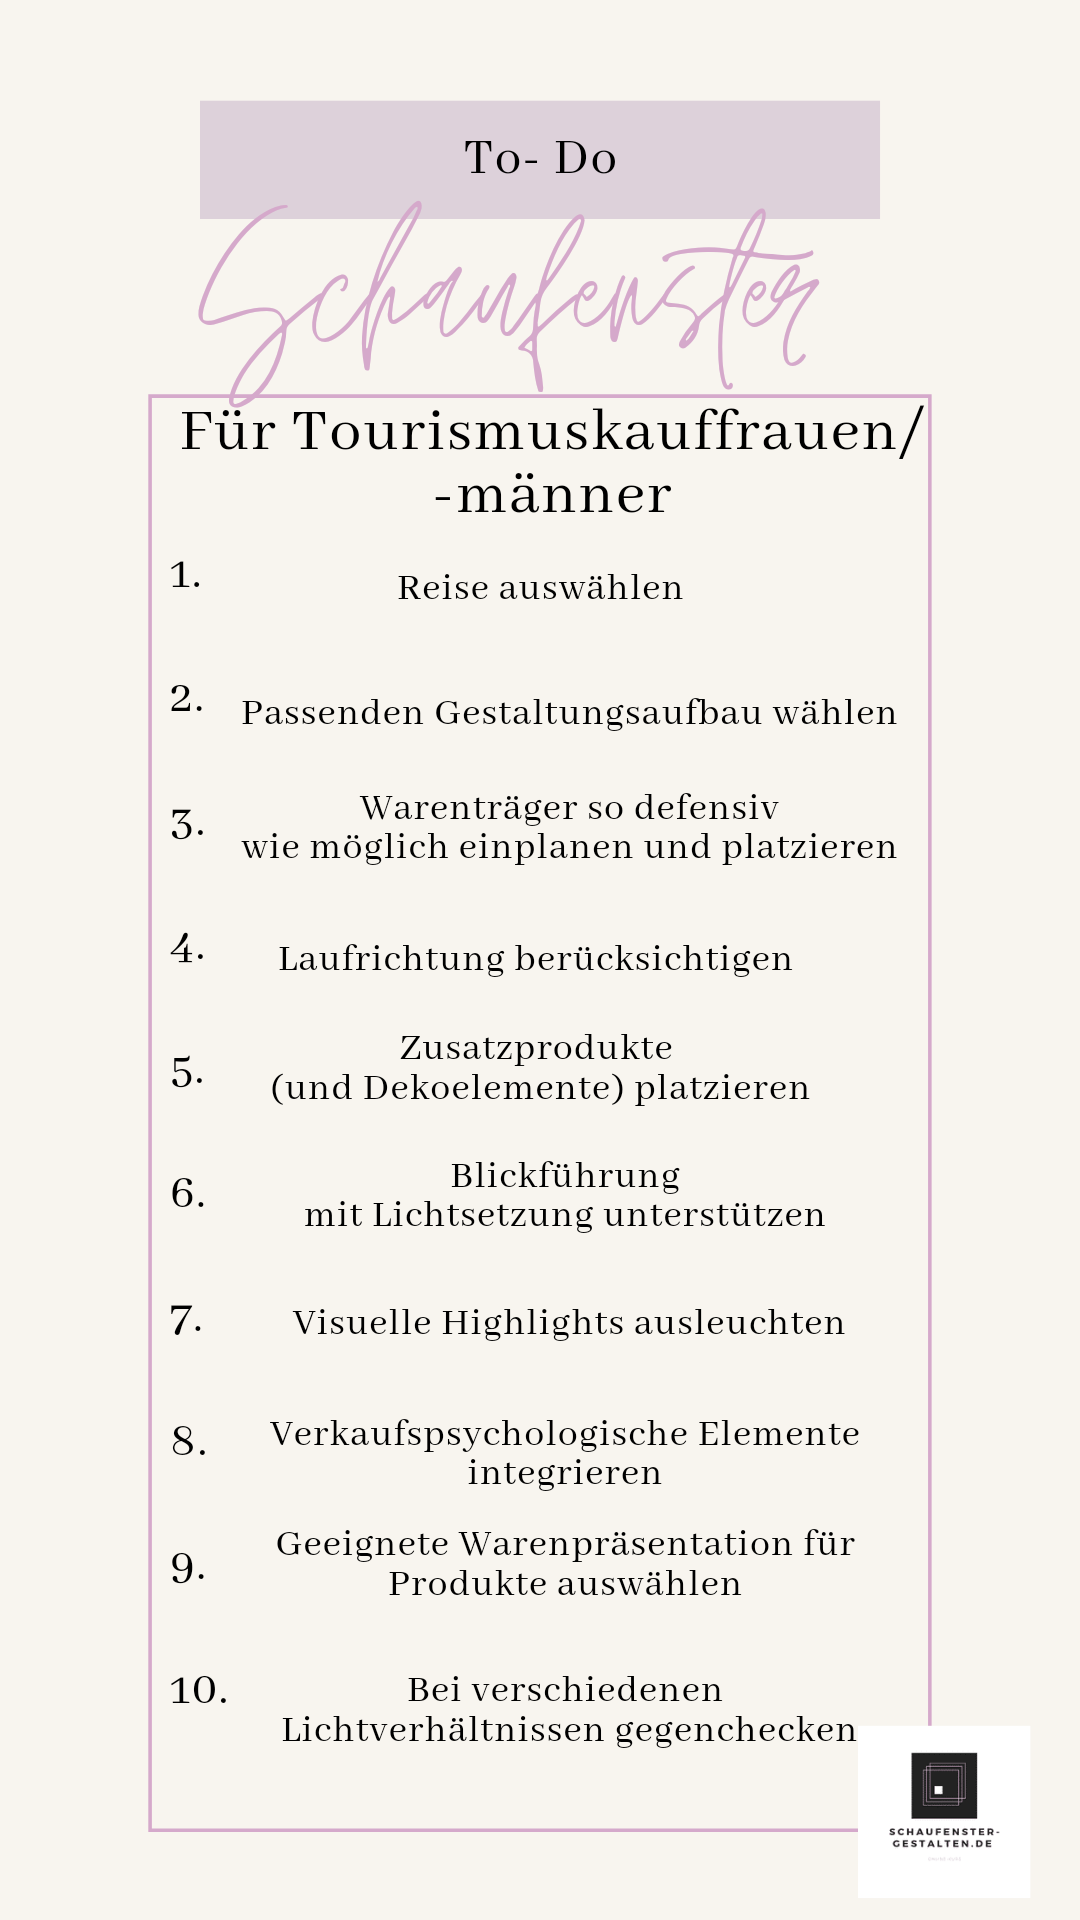 Checkliste Tourismuskaufleute